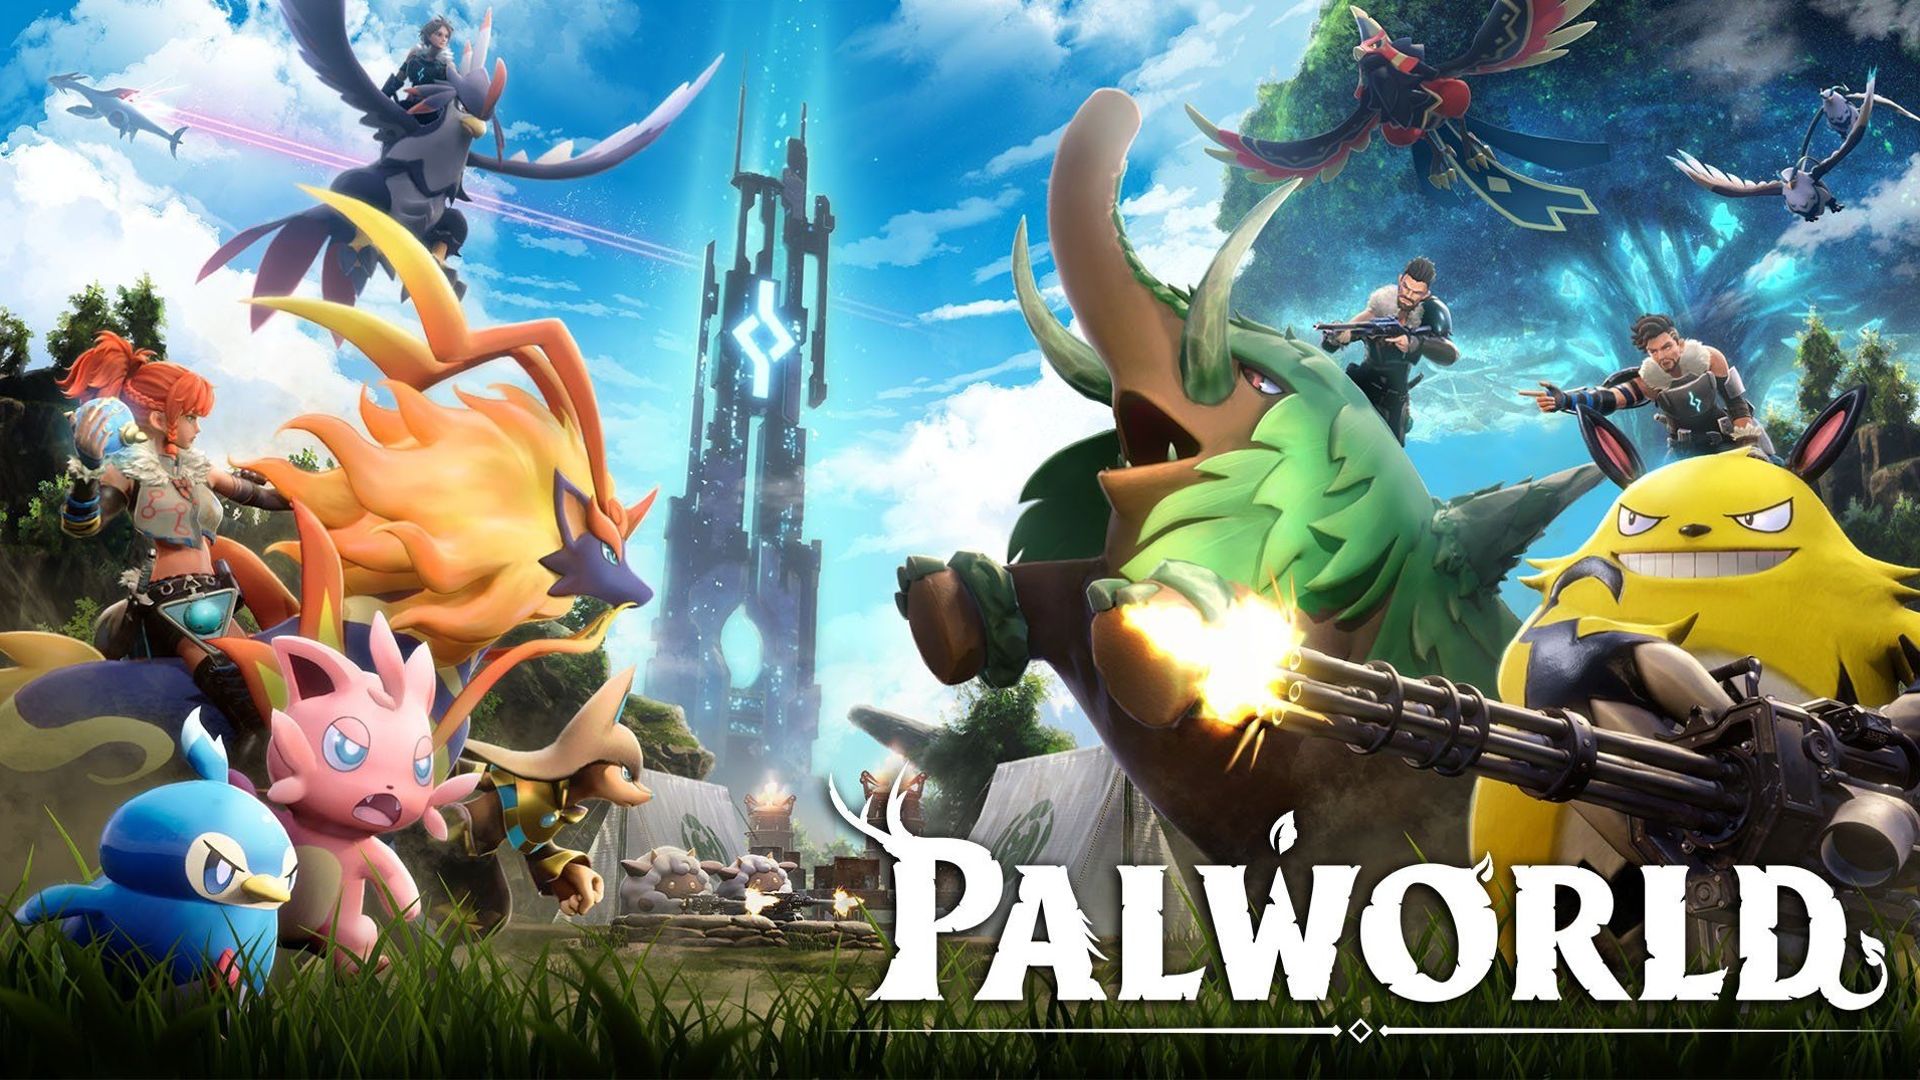 Palworld, un jeu de type Pokémon mais avec des armes, débarque sur